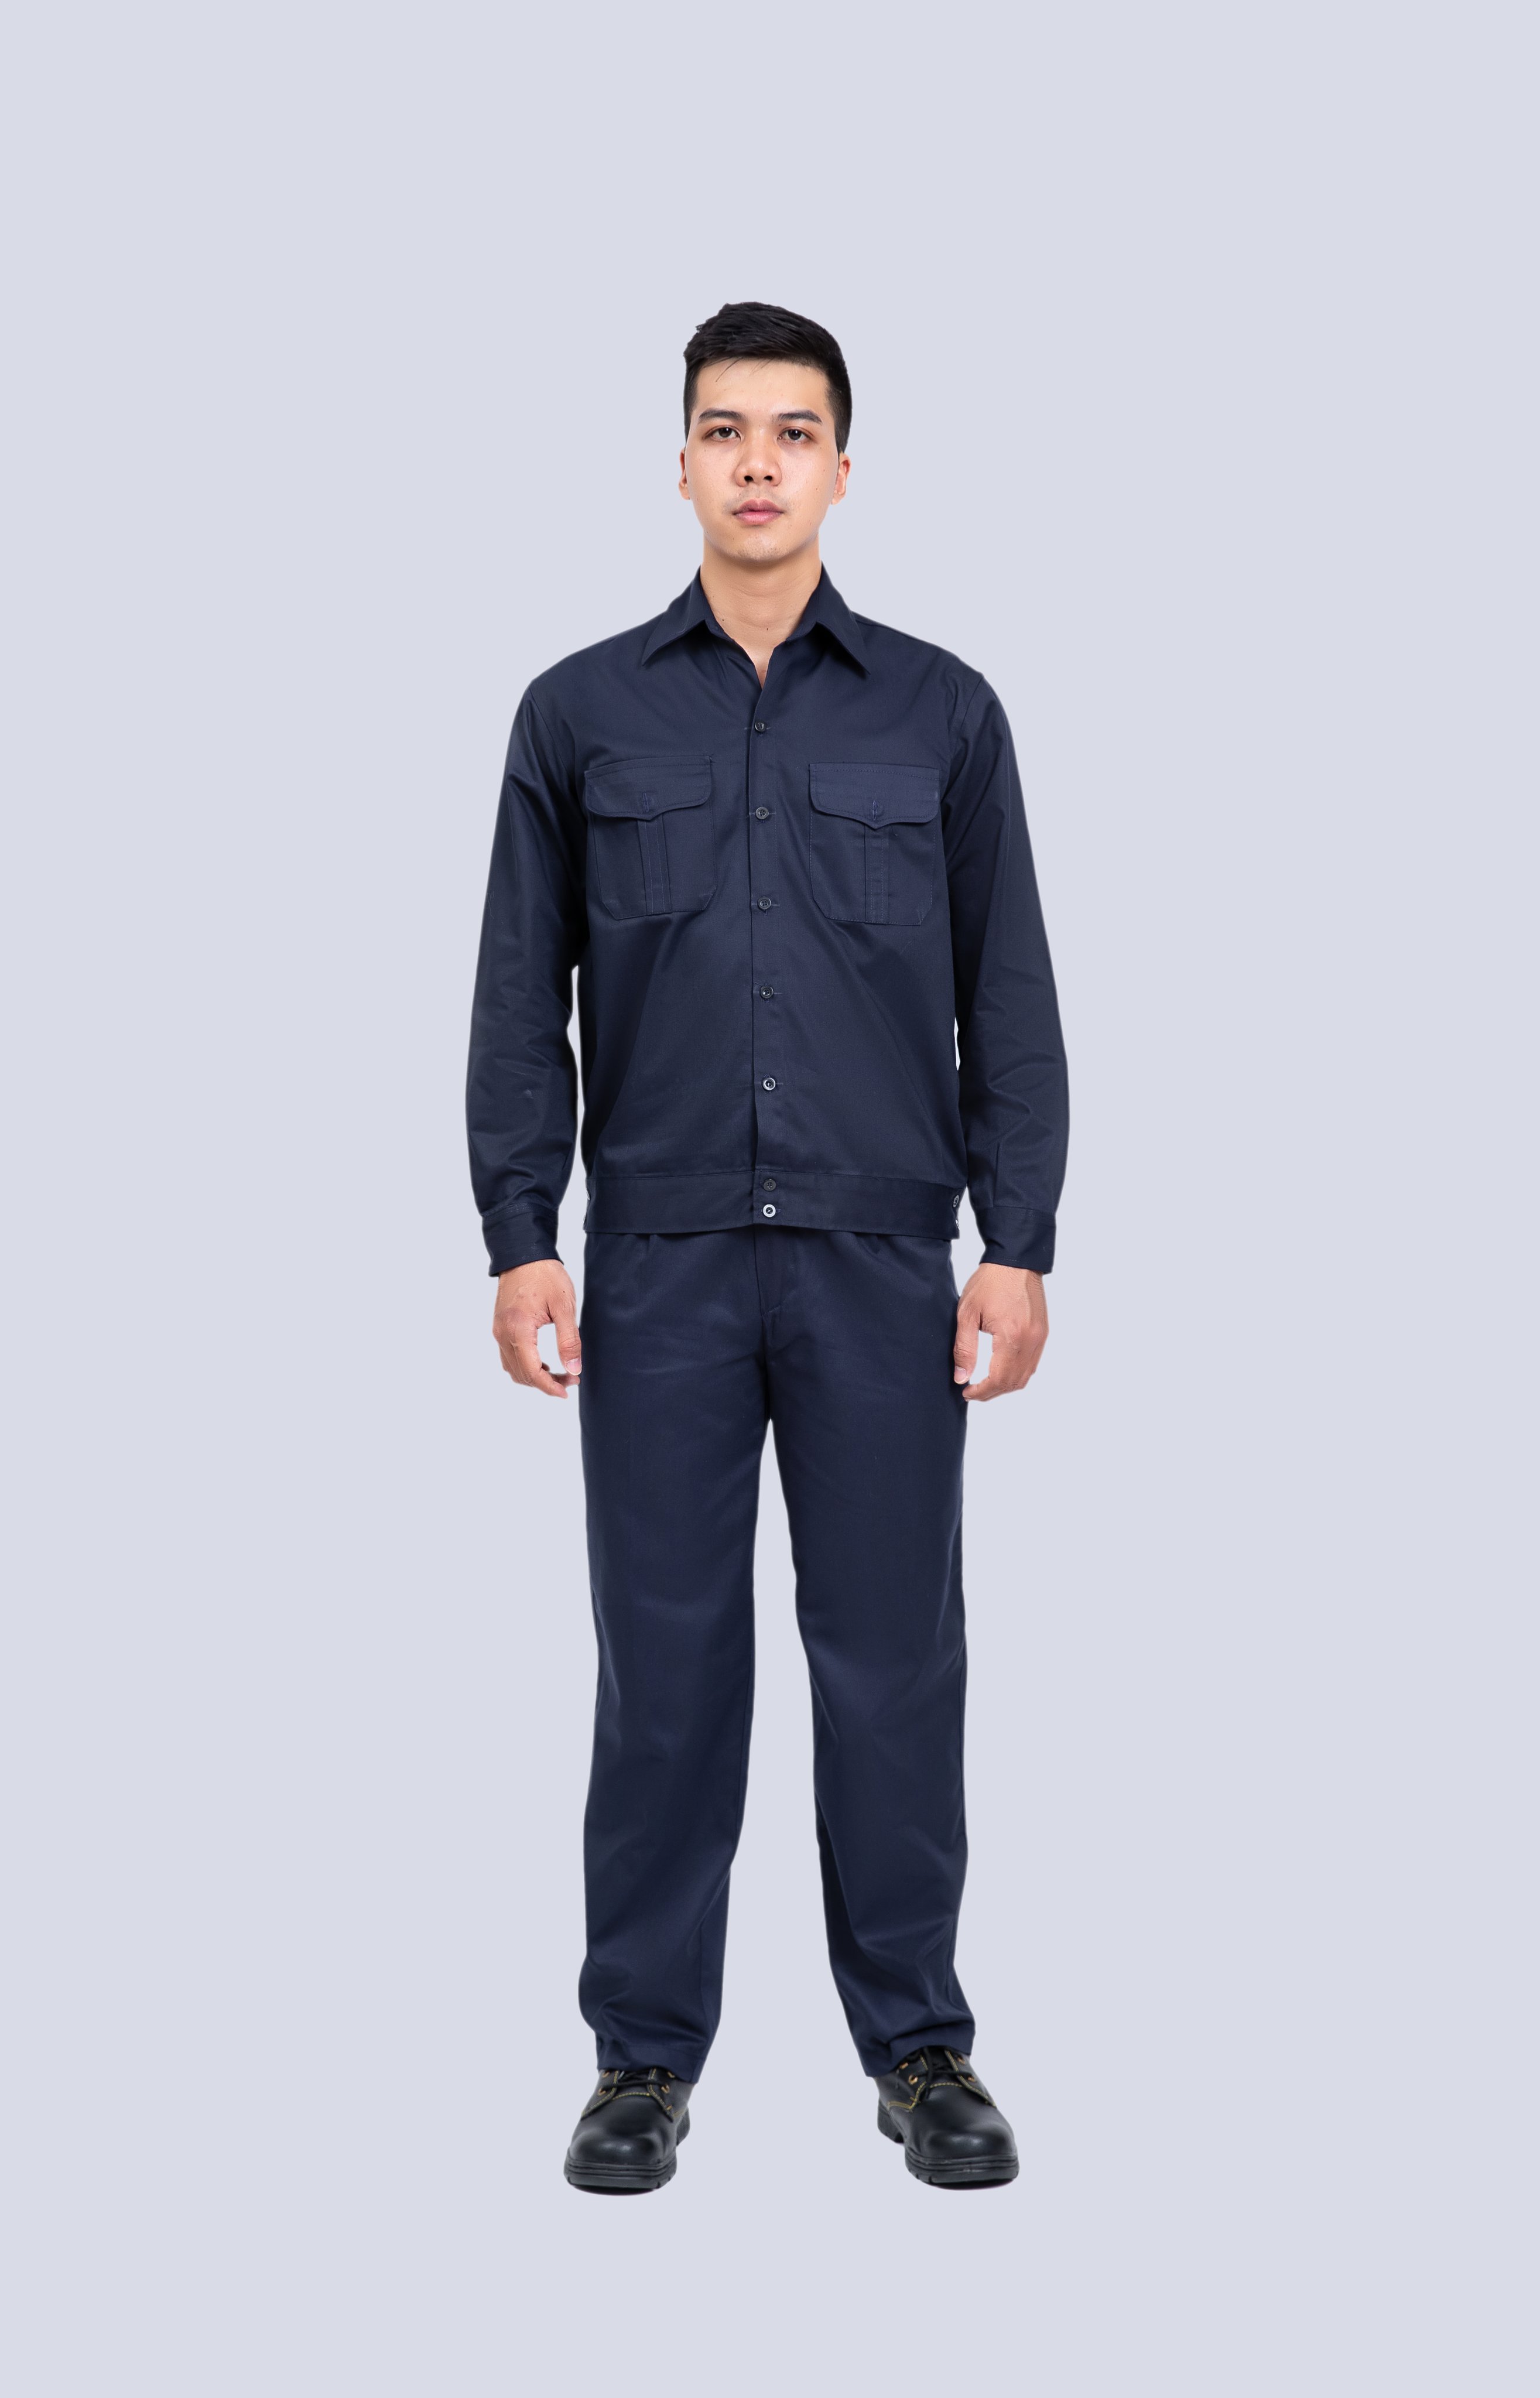 GIẢM GIÁ - Bộ quần áo bảo hộ màu xanh tím than DN-09